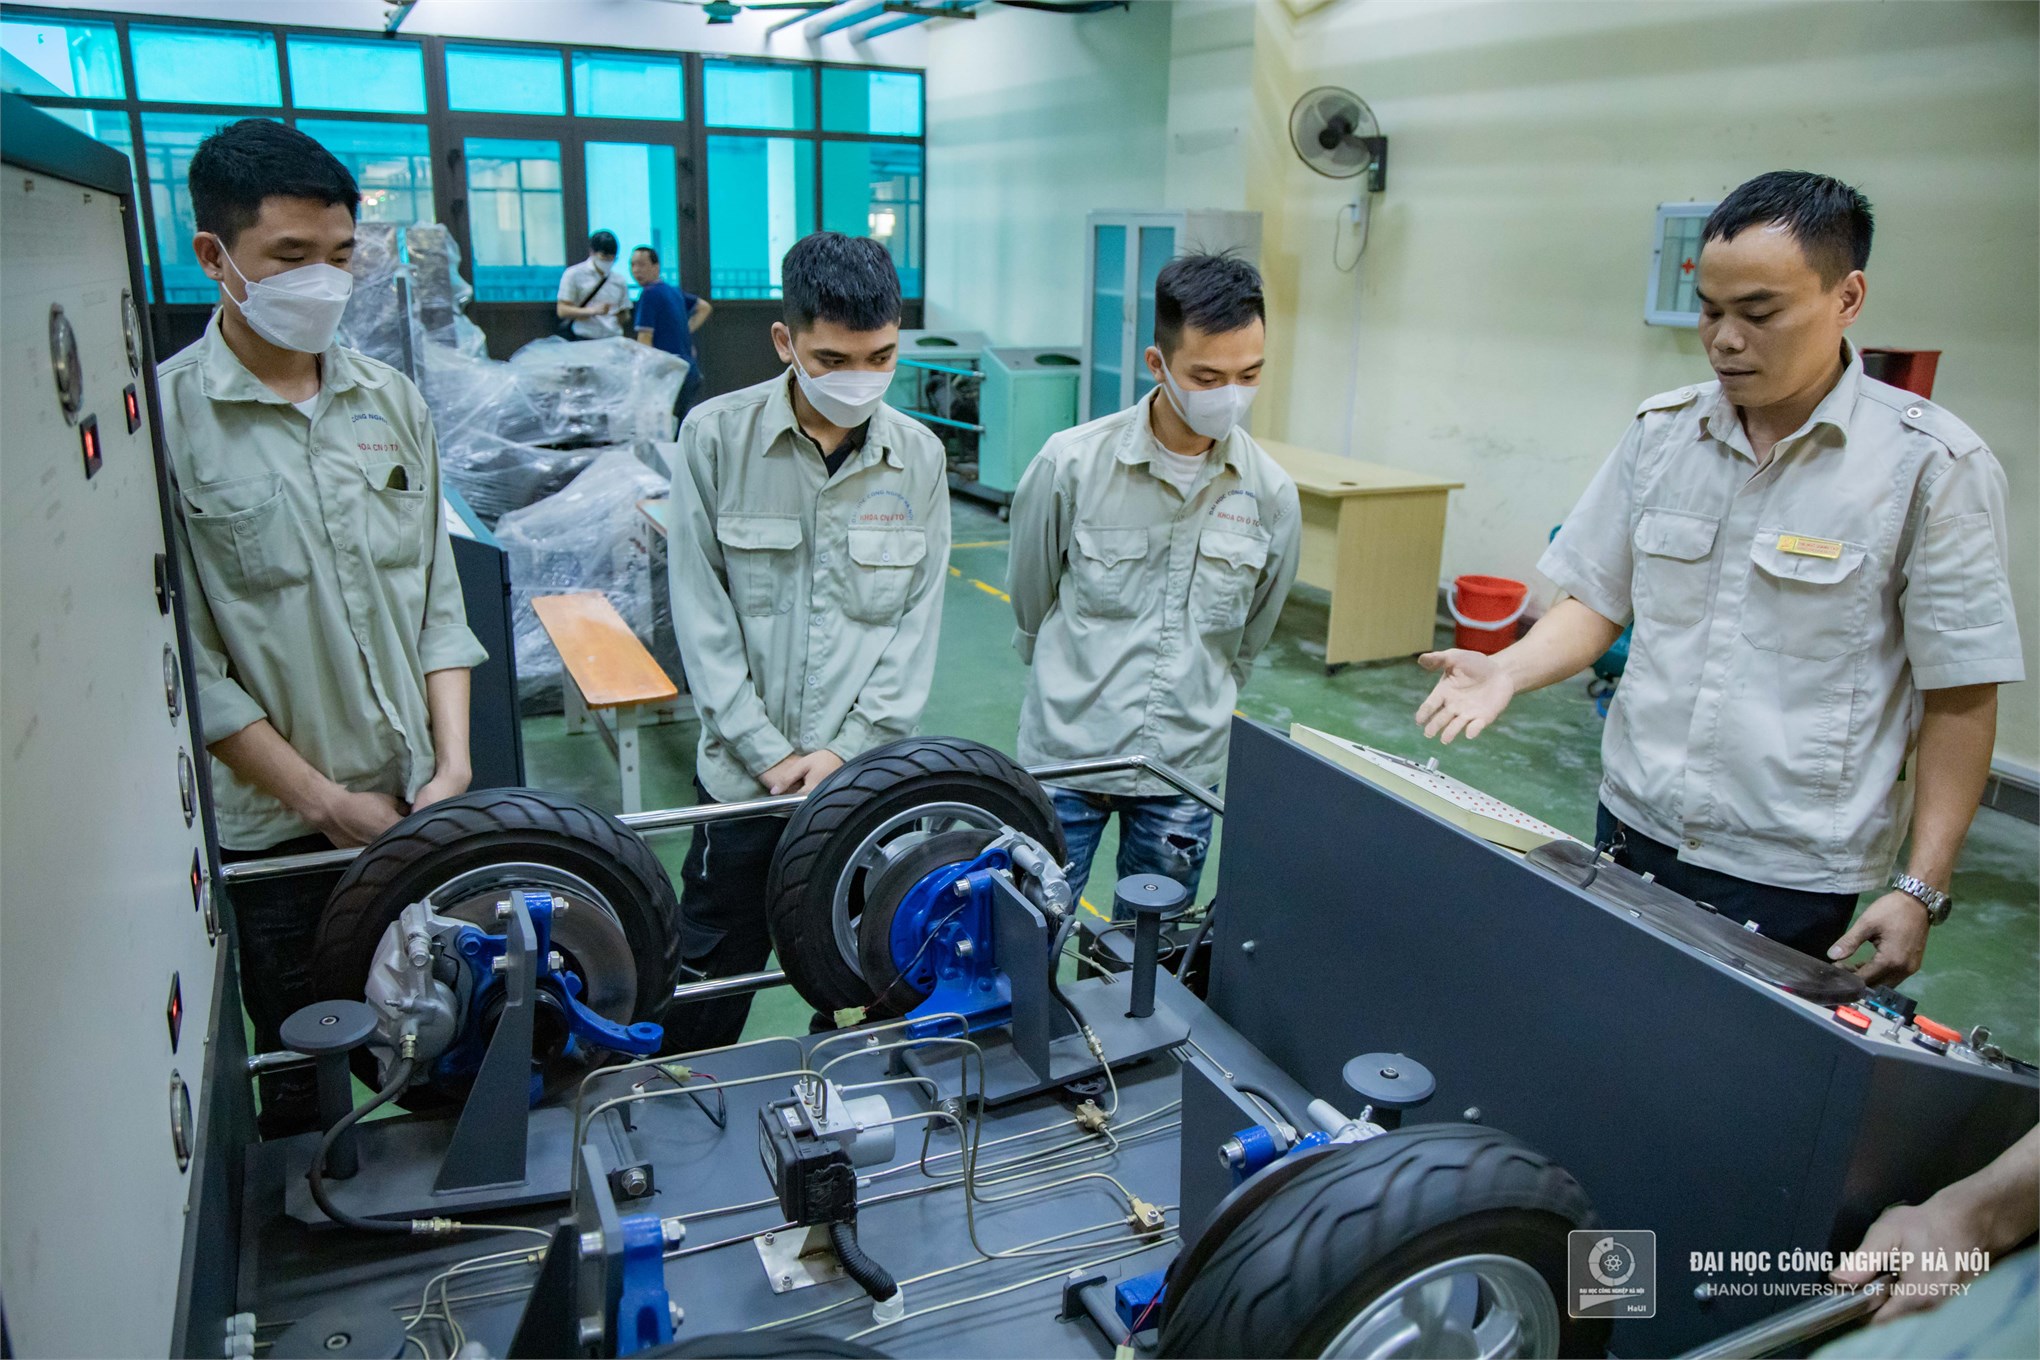 Khoa Công nghệ ô tô, Đại học Công nghiệp Hà Nội khẳng định vai trò tiên phong trong đào tạo ngành Công nghệ kỹ thuật Cơ điện tử ô tô